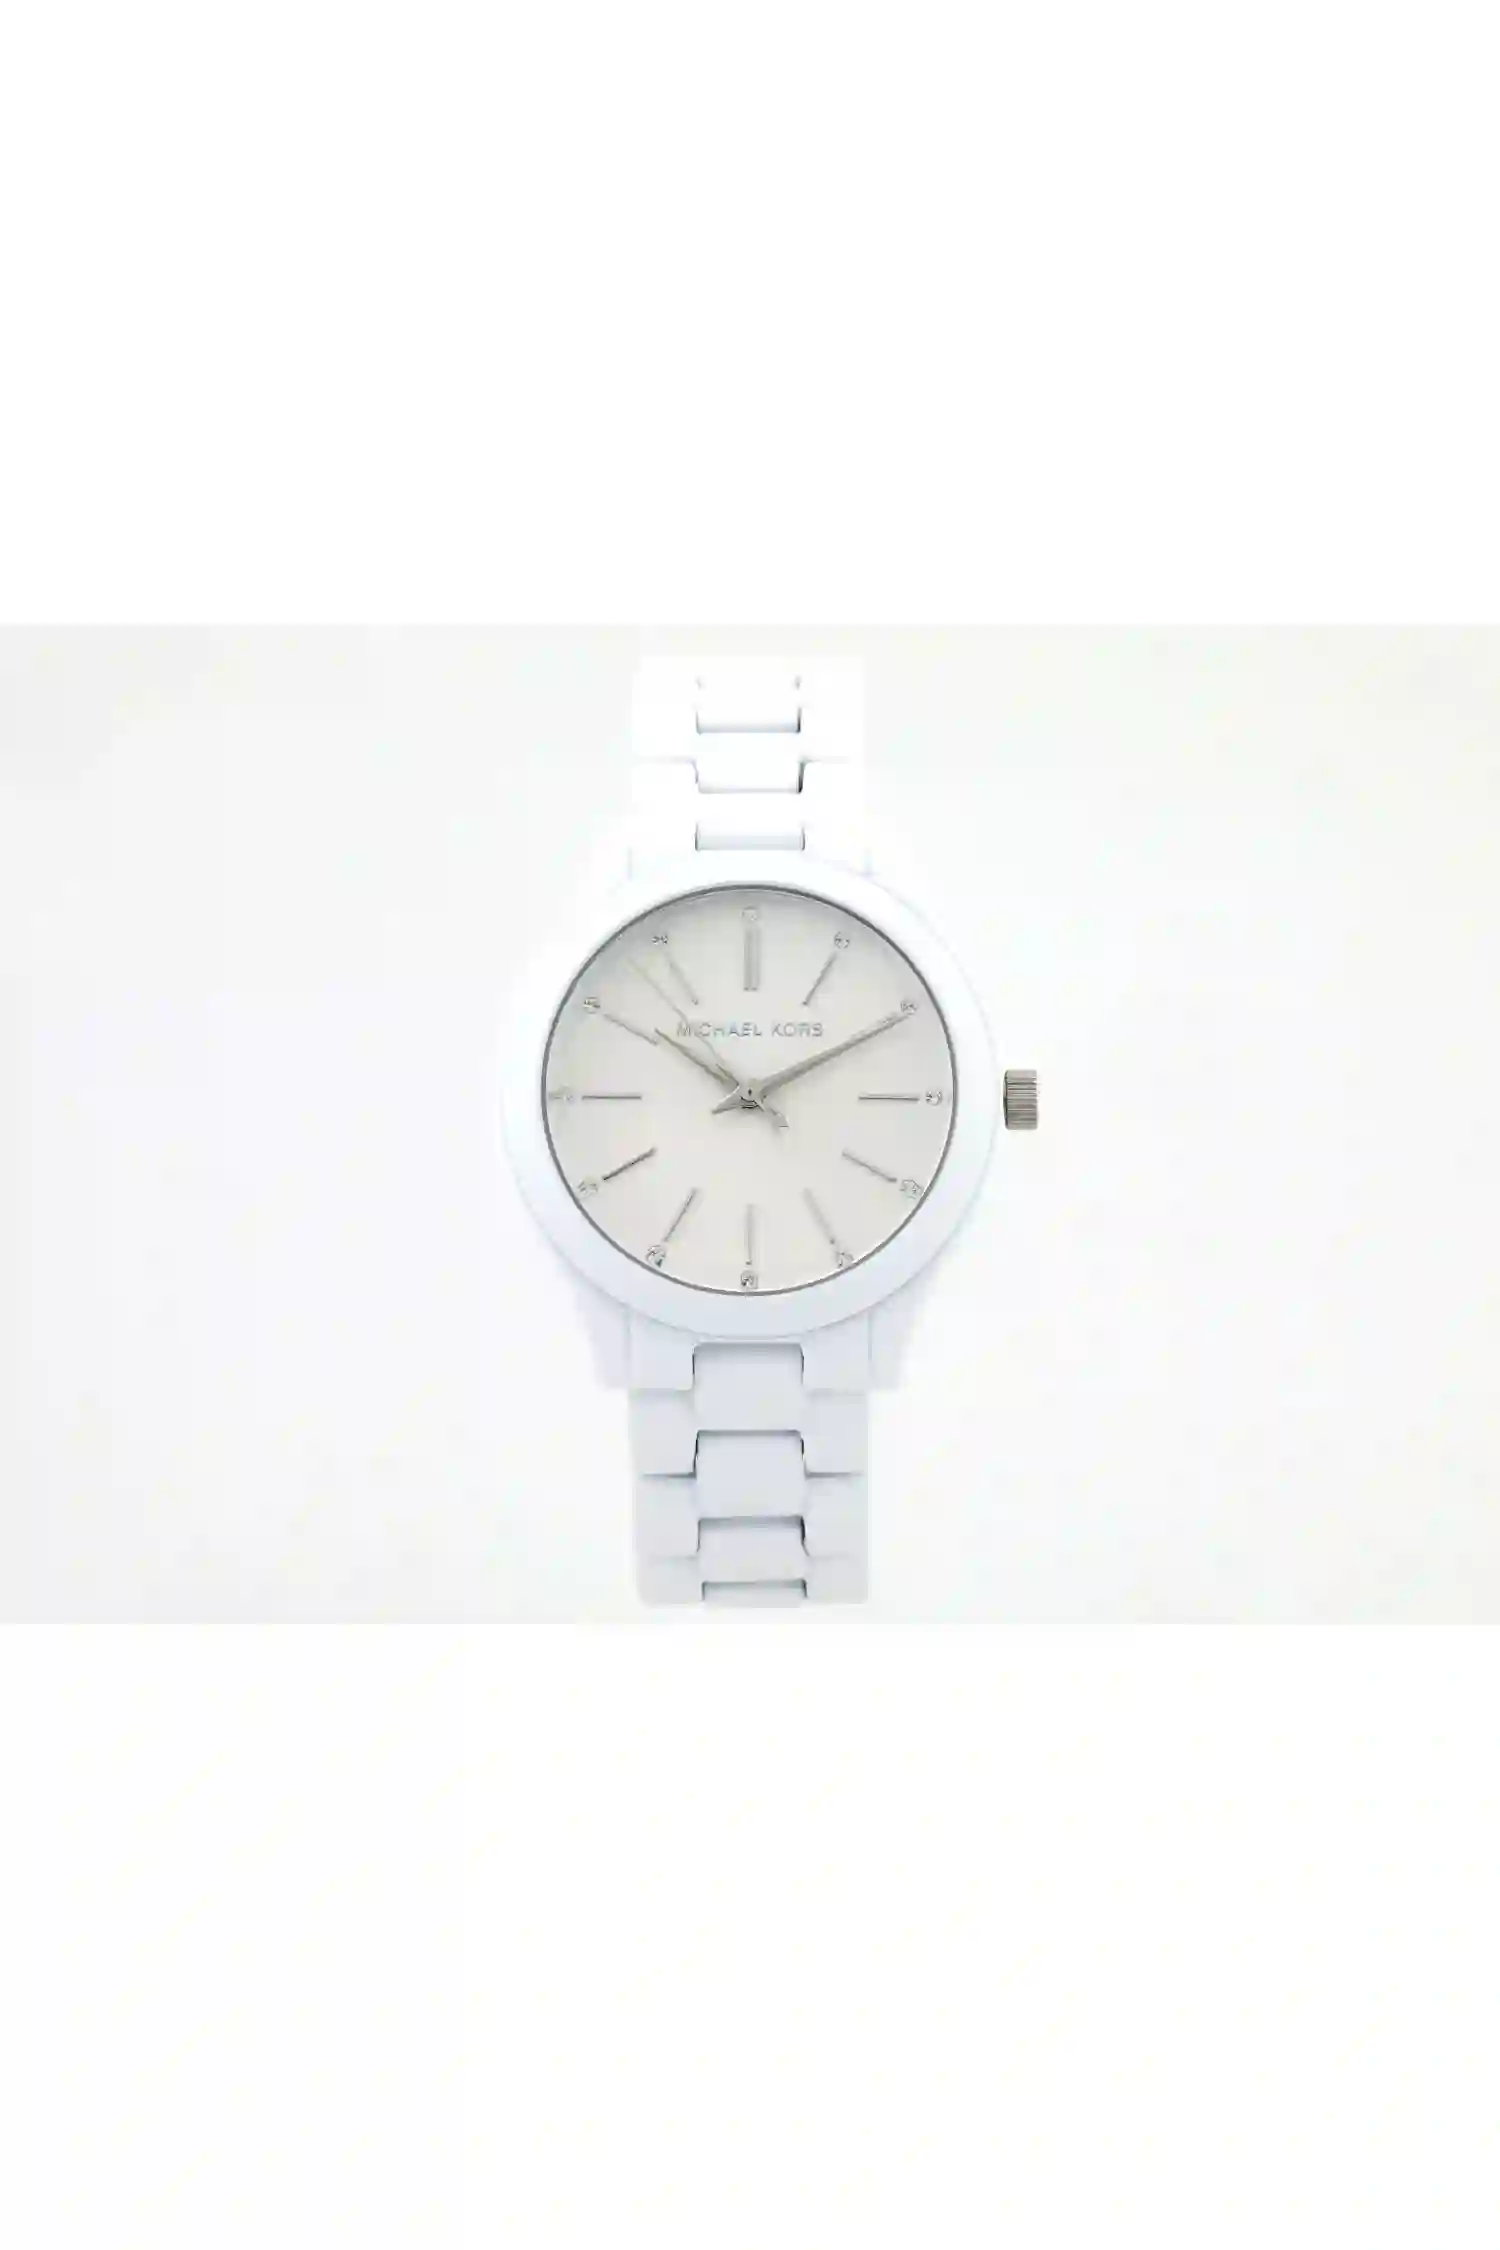 Наручные часы Michael Kors MK3908 — купить в интернет-магазине AllTime.ru  по лучшей цене, фото, характеристики, инструкция, описание